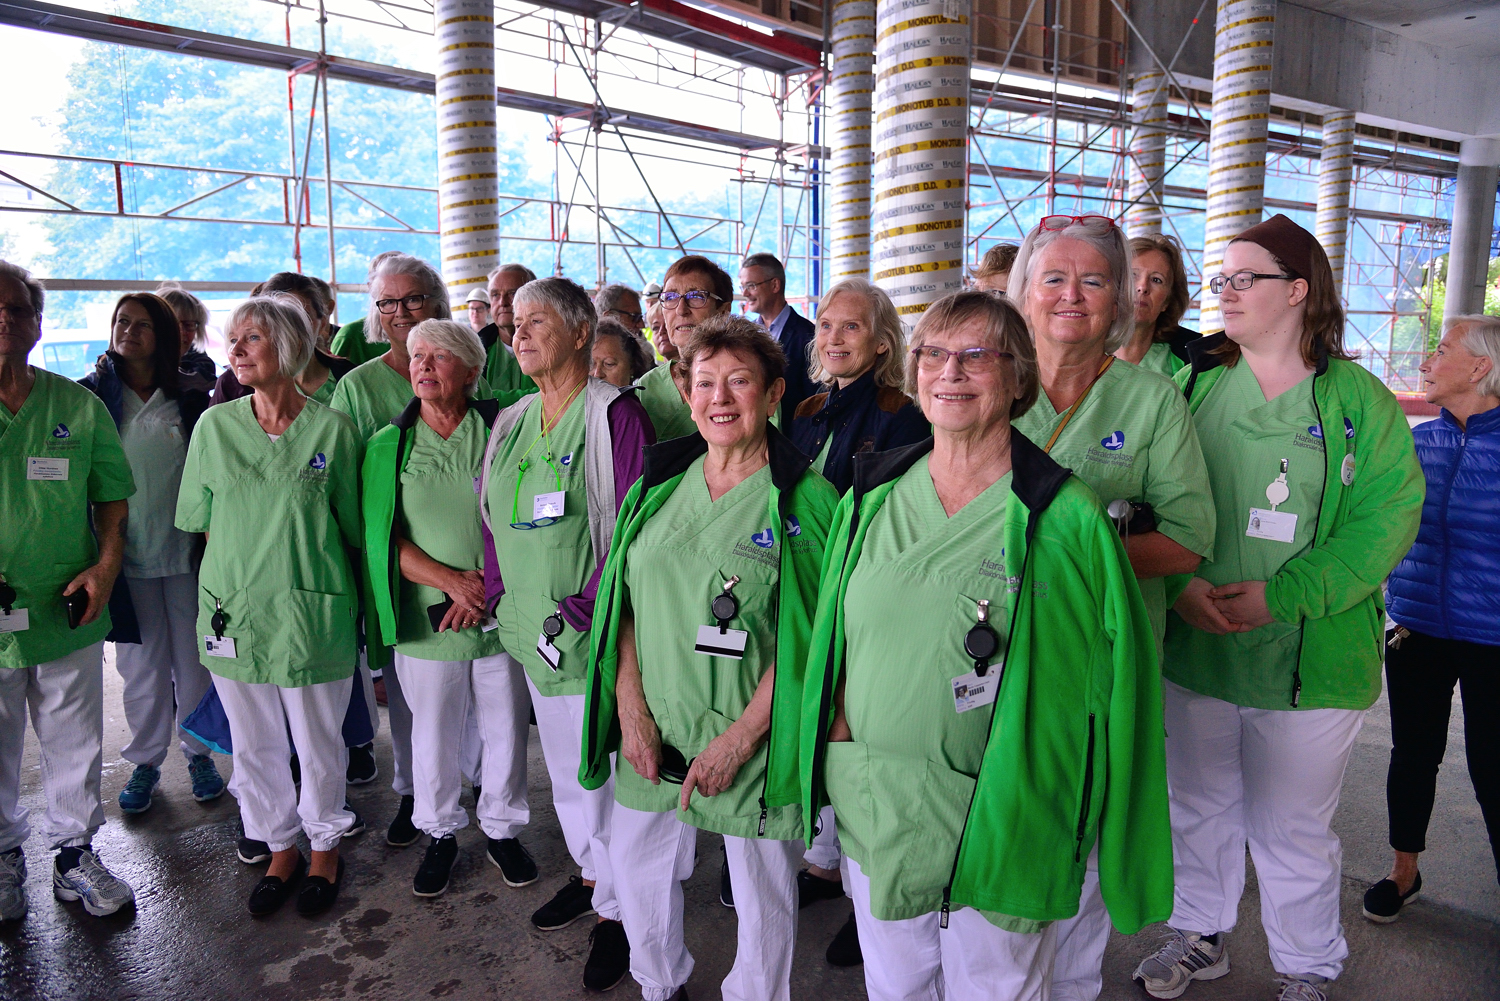 De frivillige kjennes igjen ved at de går i grønn kittel. Foto: TORBJØRN WILHELMSEN, WIKOS.NO